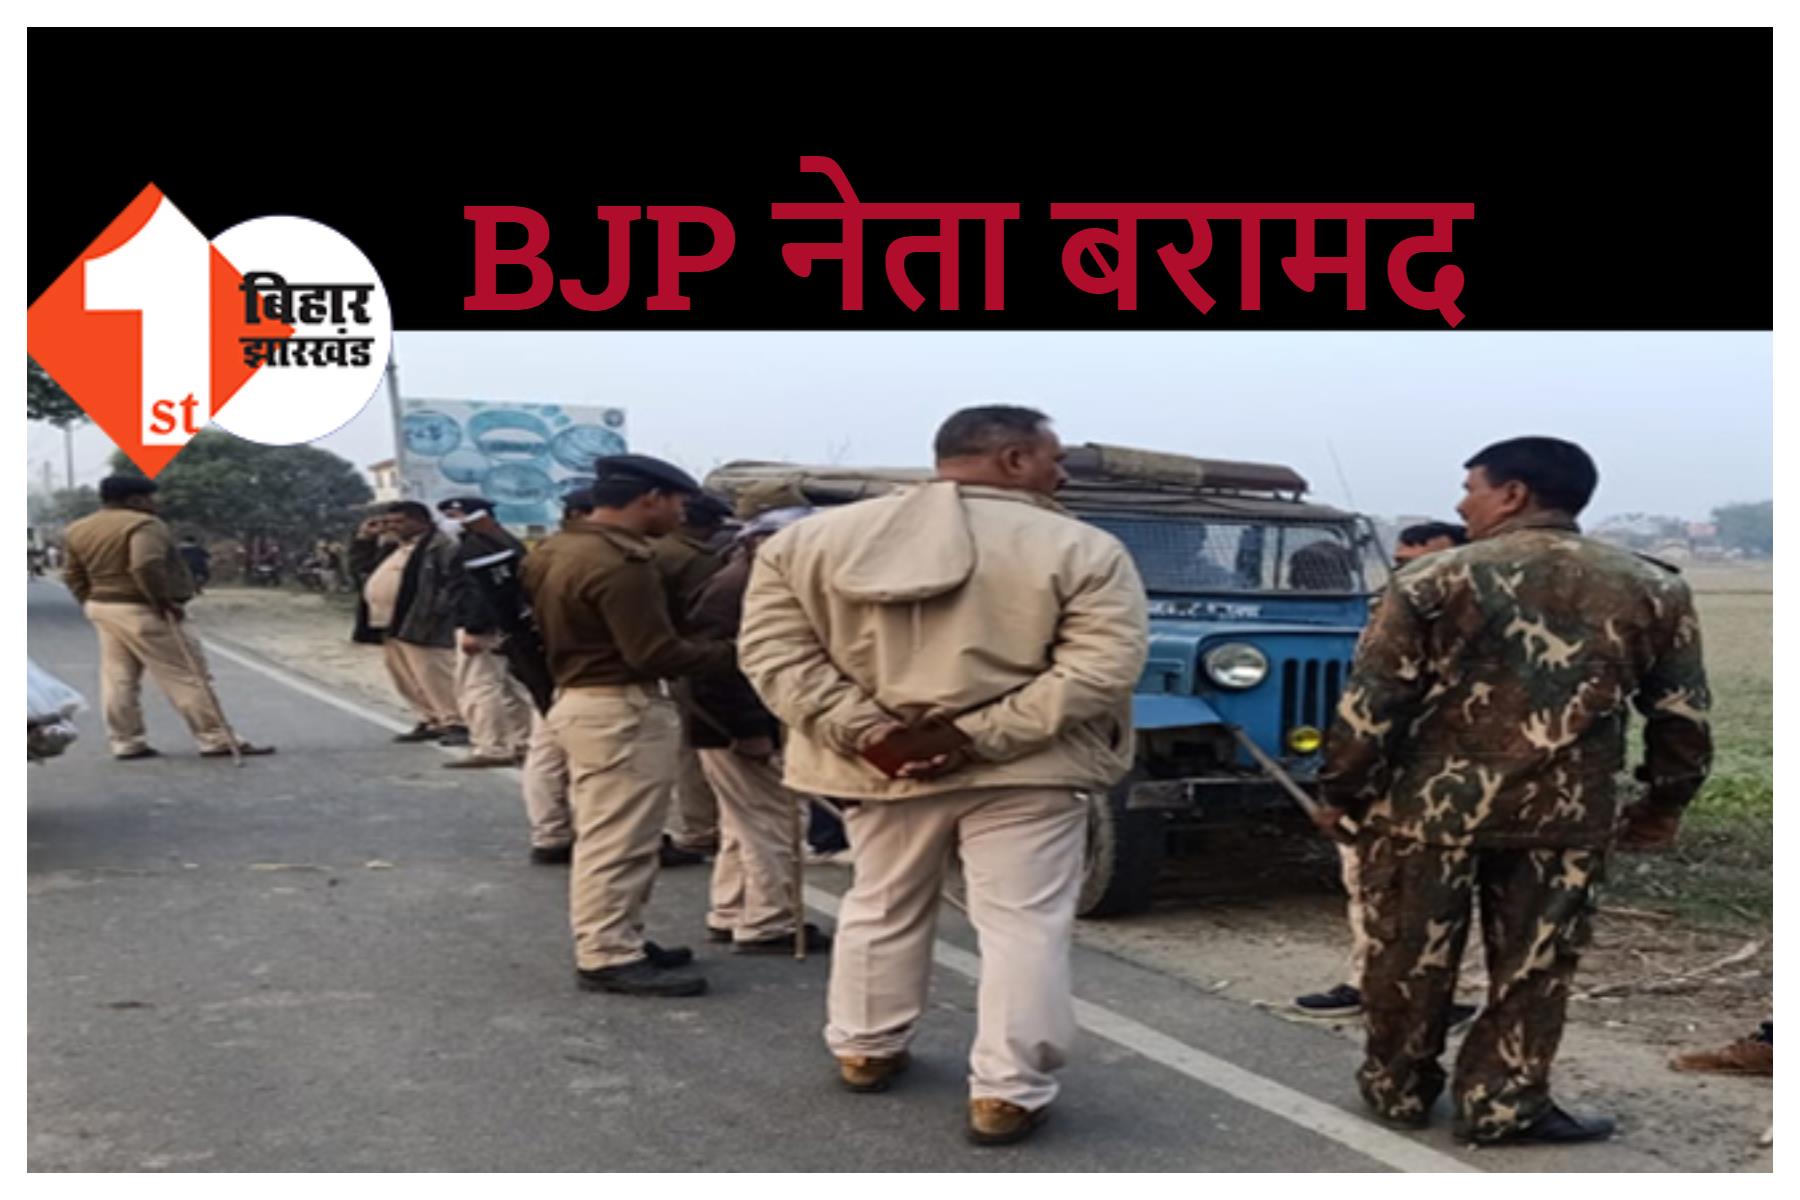 14 दिसंबर को समस्तीपुर से लापता BJP नेता दरभंगा से बरामद, परिजनों ने दर्ज कराया था अपहरण का मामला 